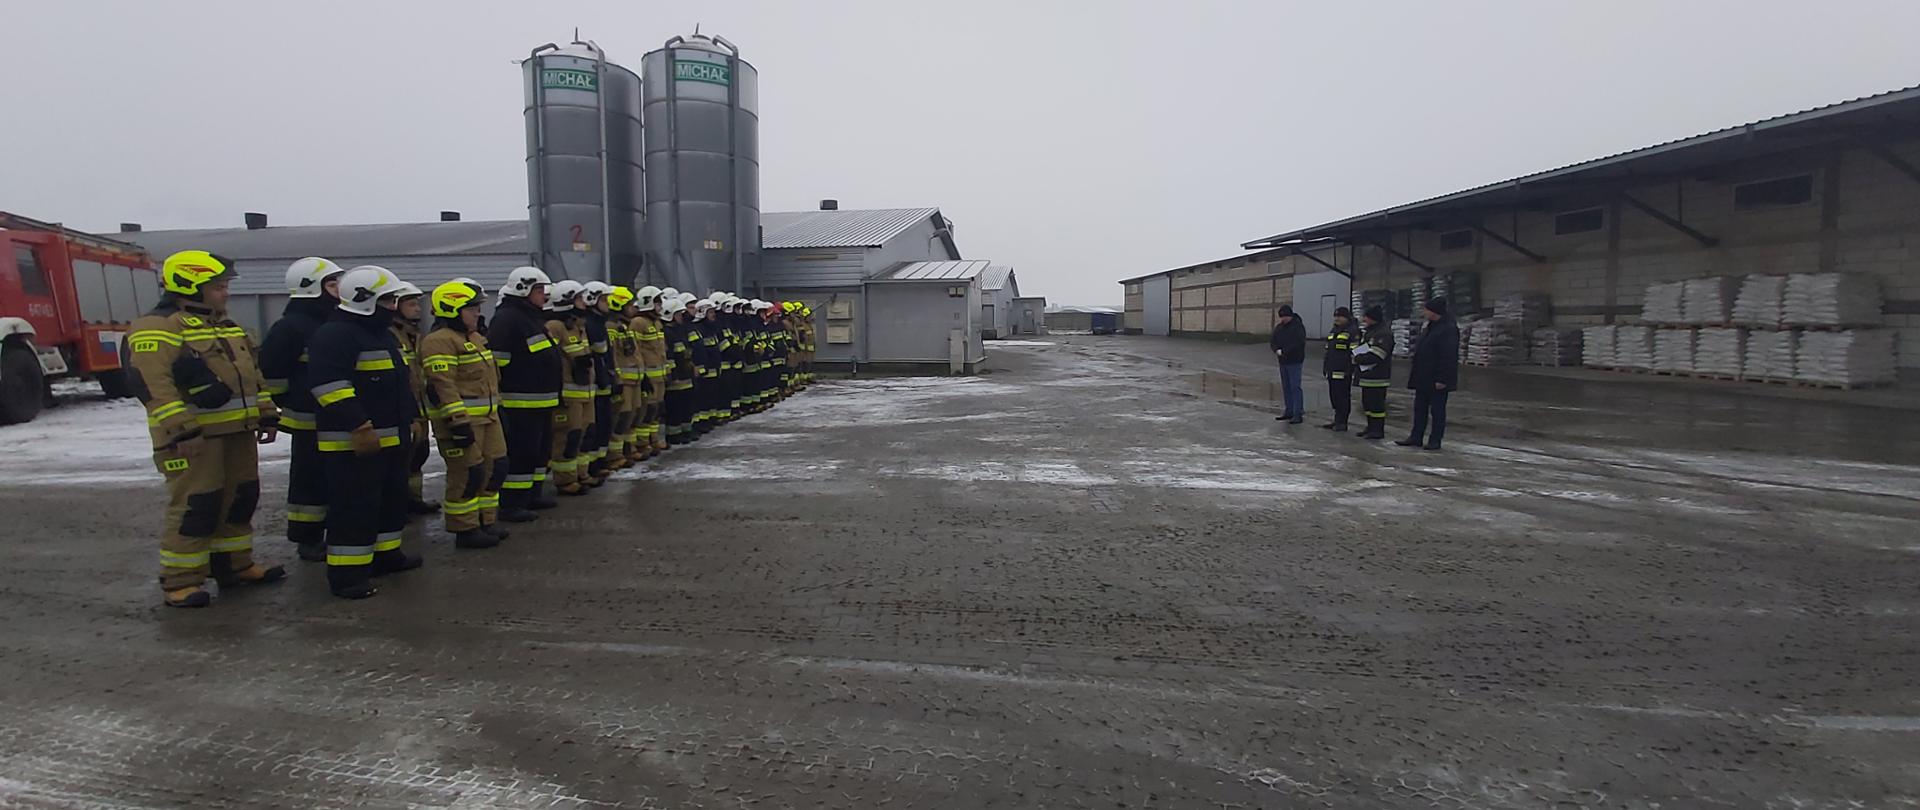 Gminne Ćwiczenia Ochotniczych Straży Pożarnych w miejscowości Stasin - za zdjeciu podczas zakończenia ćwiczeń strażacy w ubraniu specjalnym stoją w dwuszeregu na zbiórce na kostce, na niej leży śnieg, w tle budynki magazynowe